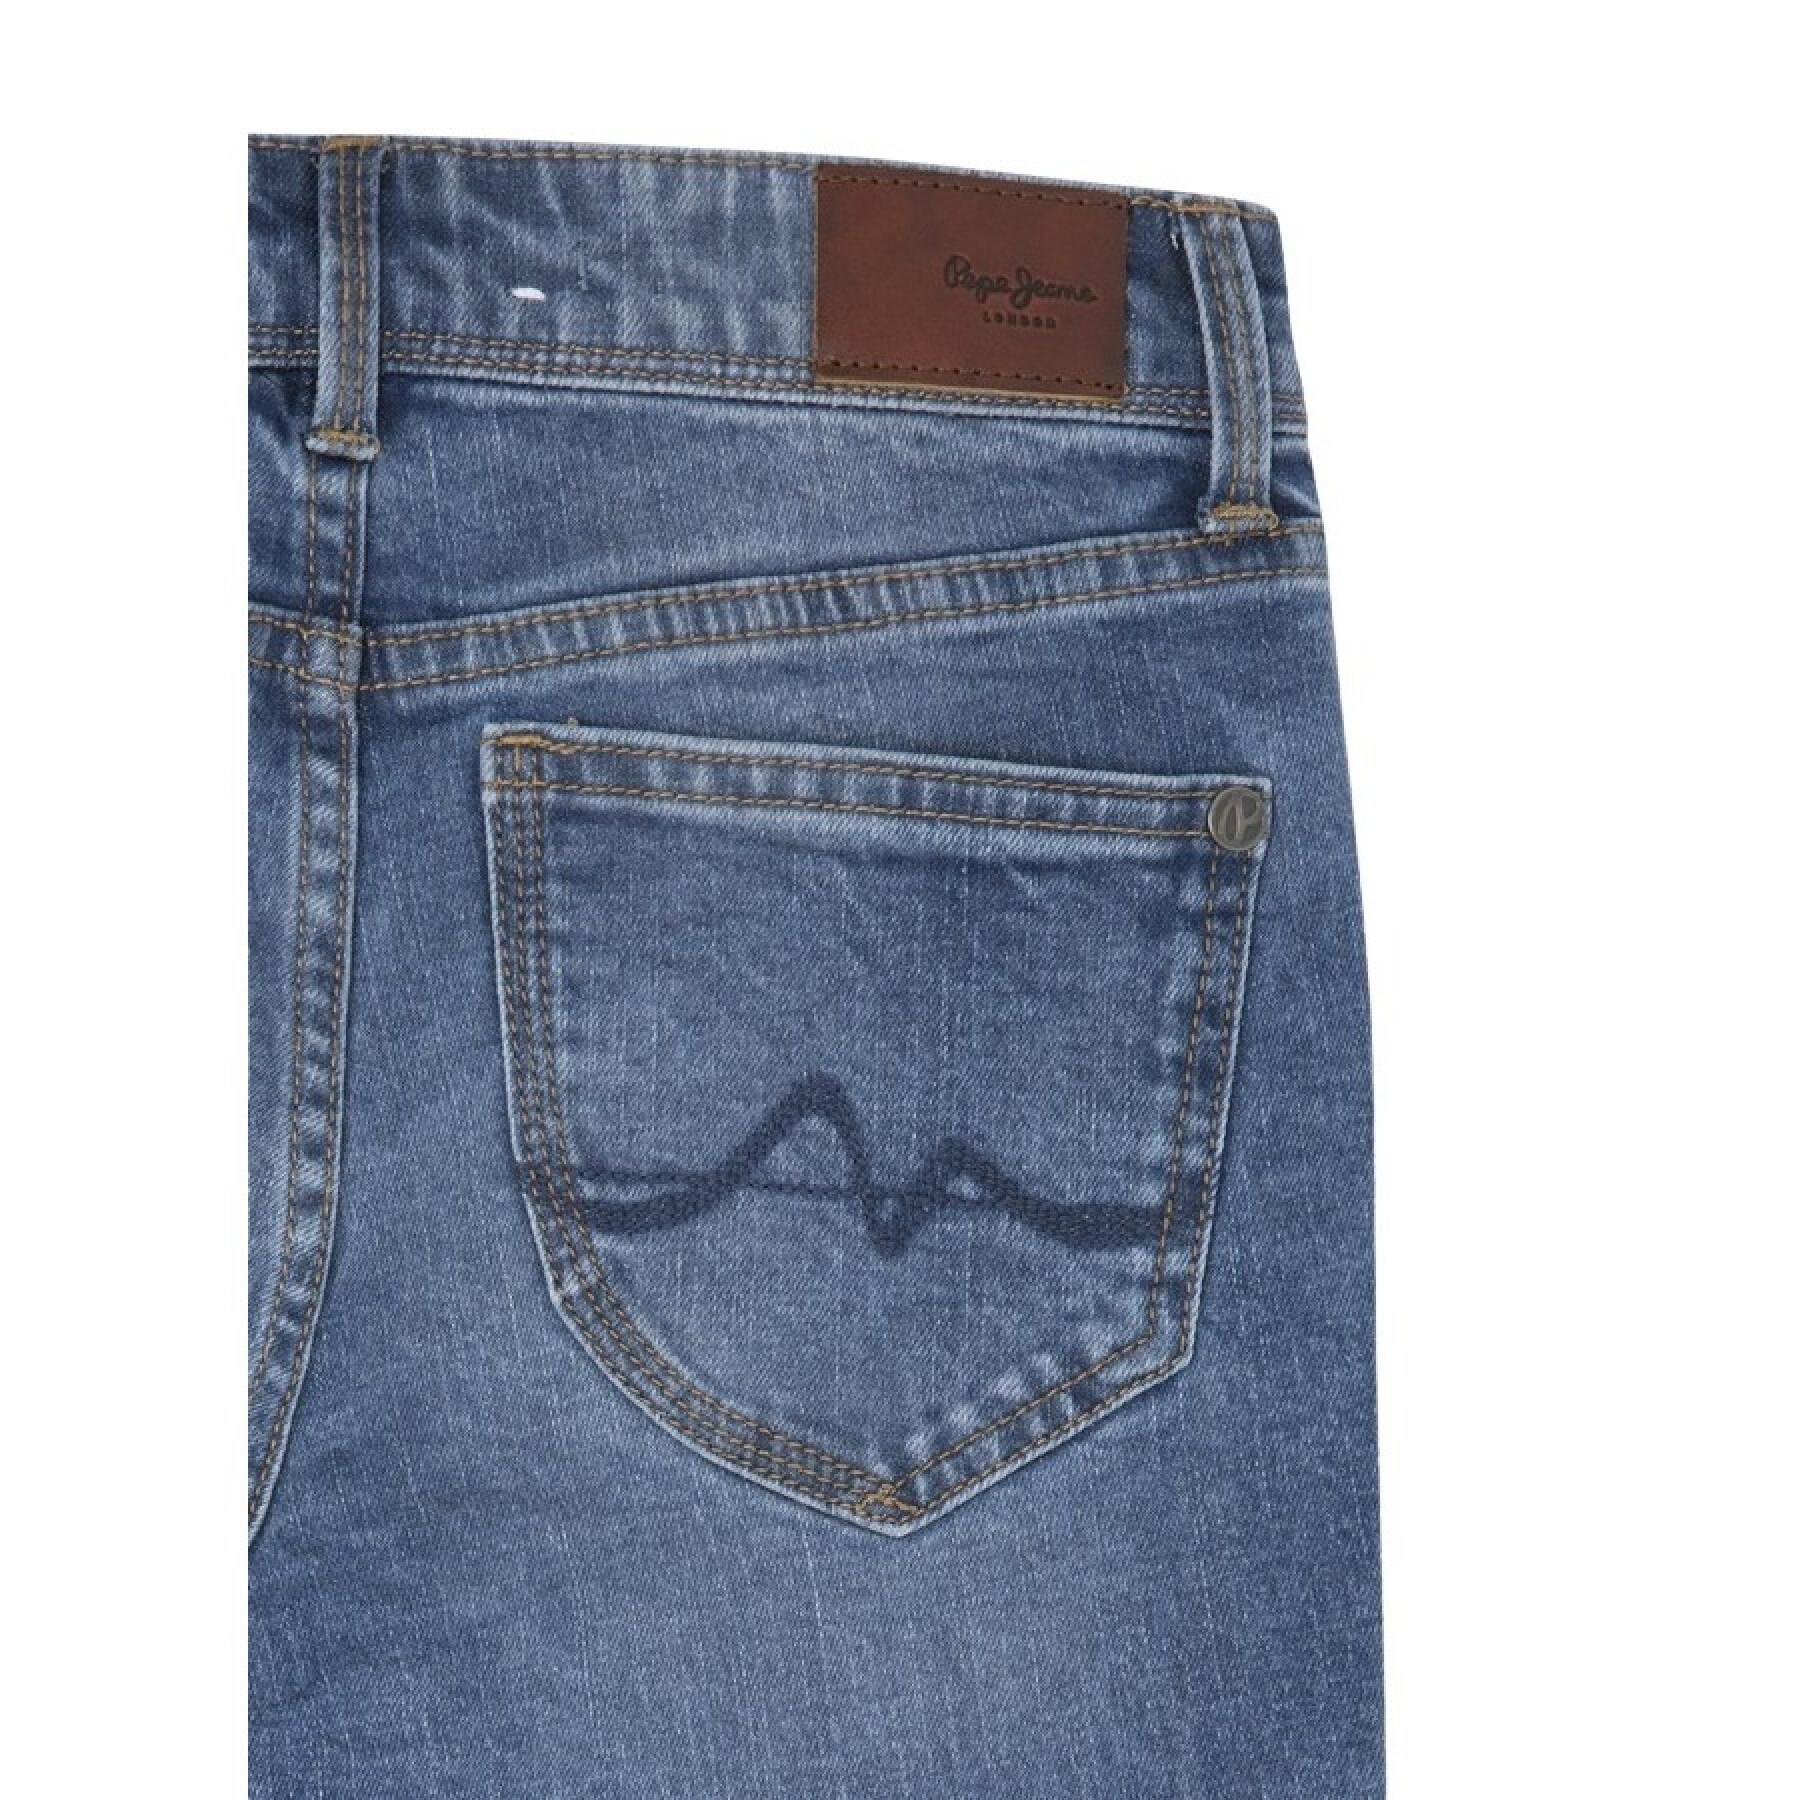 Jeans mit hohem Bein für Mädchen Pepe Jeans Pixlette